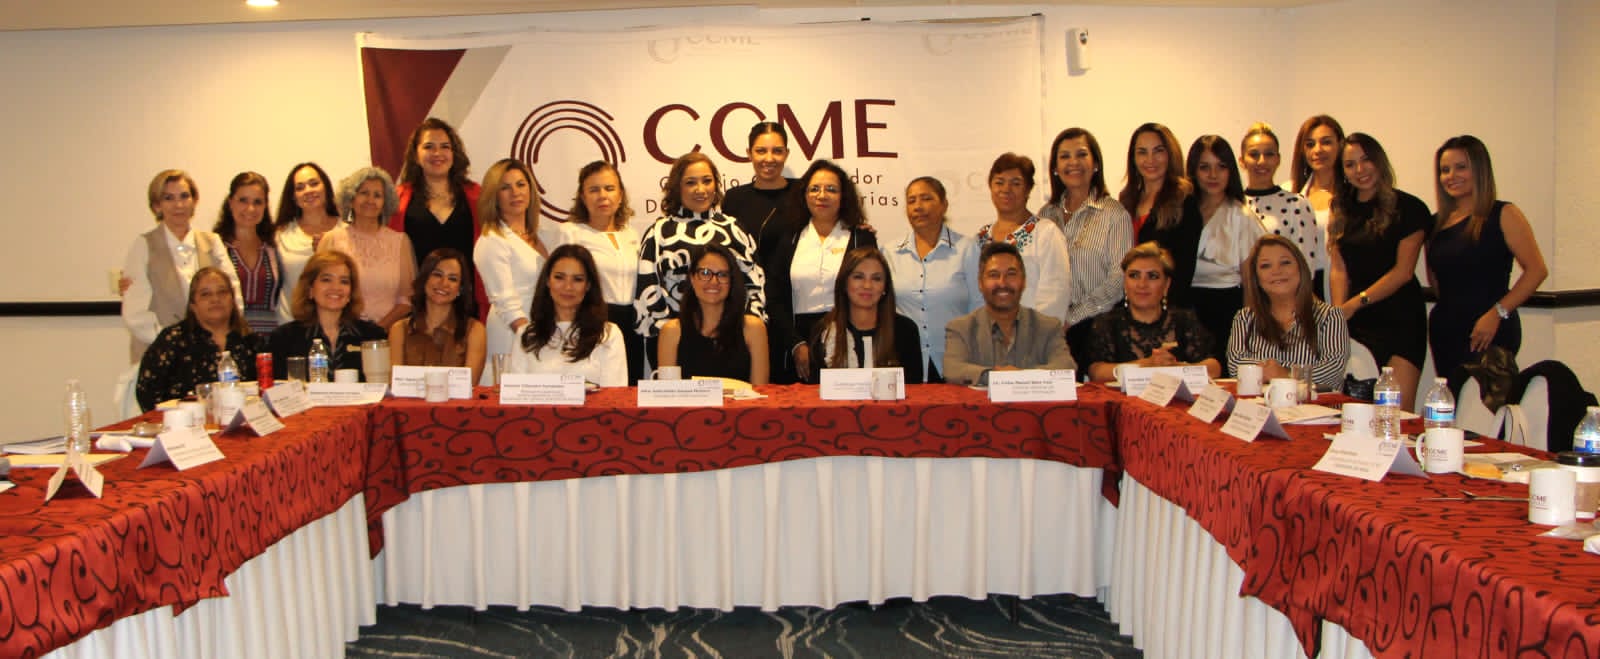 Cecytem refuerza lazos con mujeres empresarias en favor de sus estudiantes